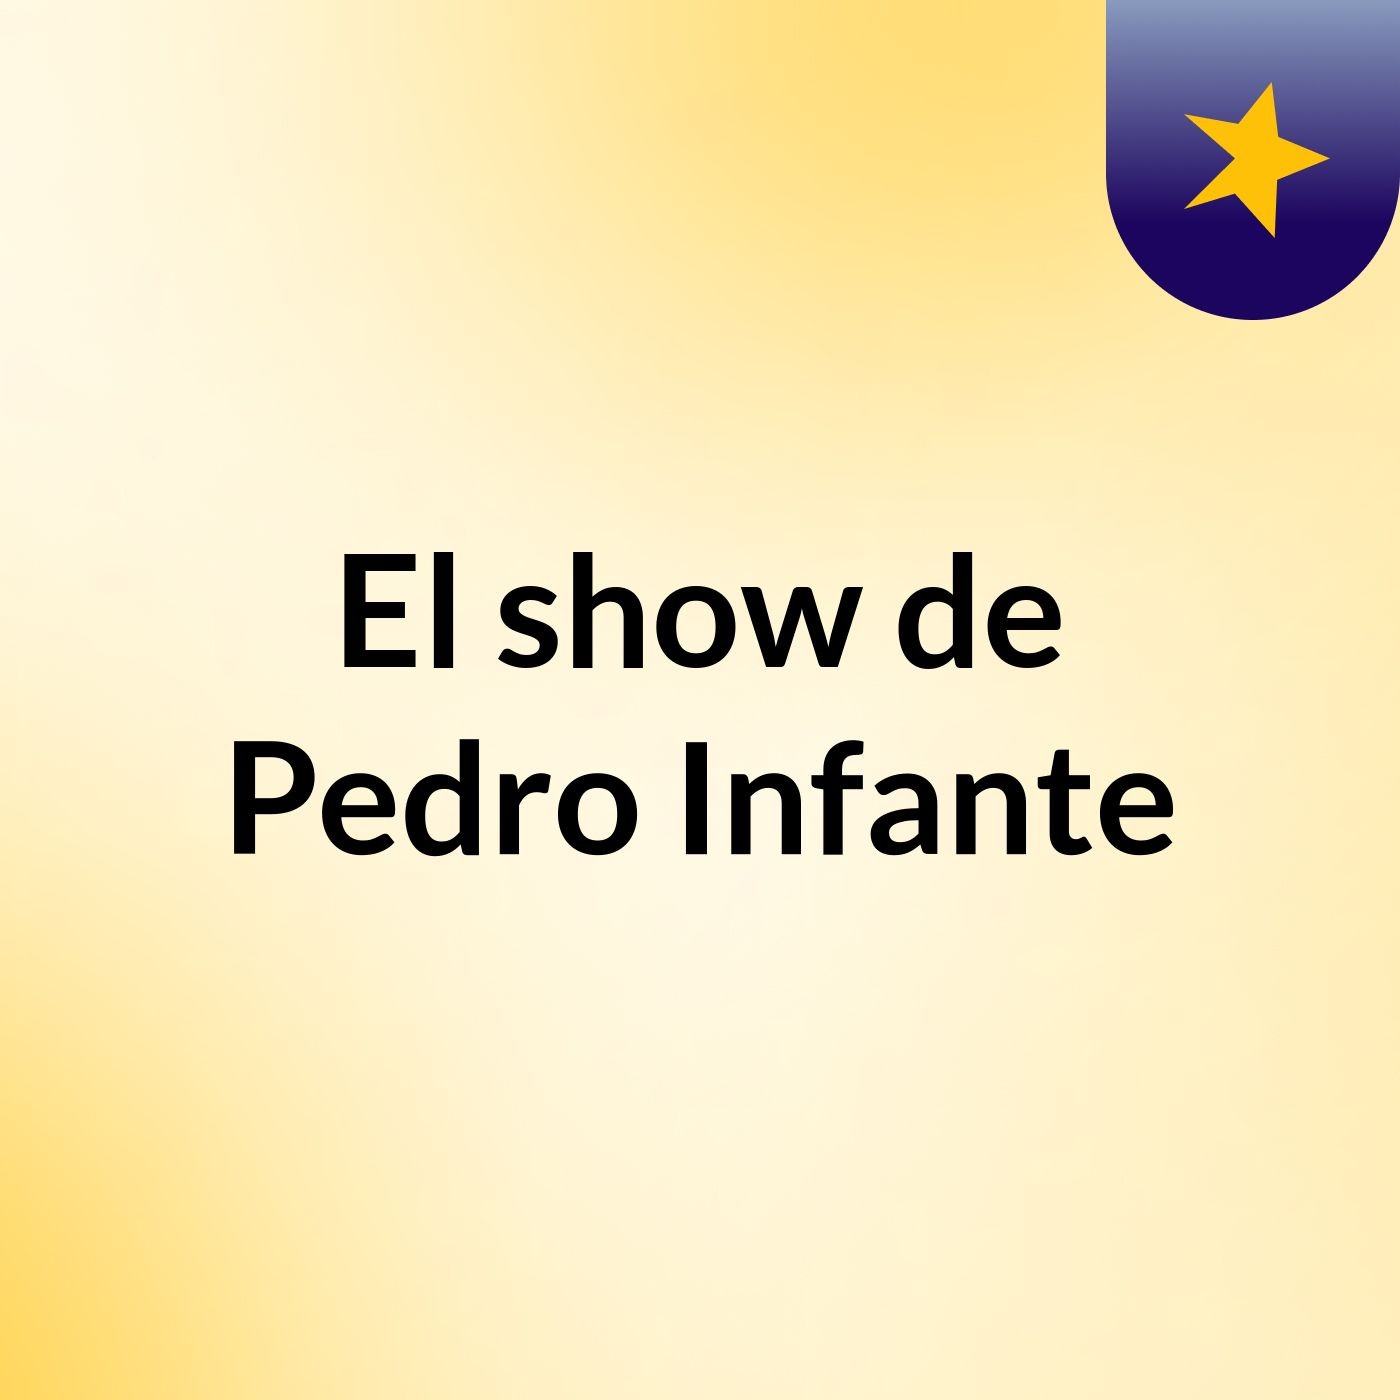 El show de Pedro Infante